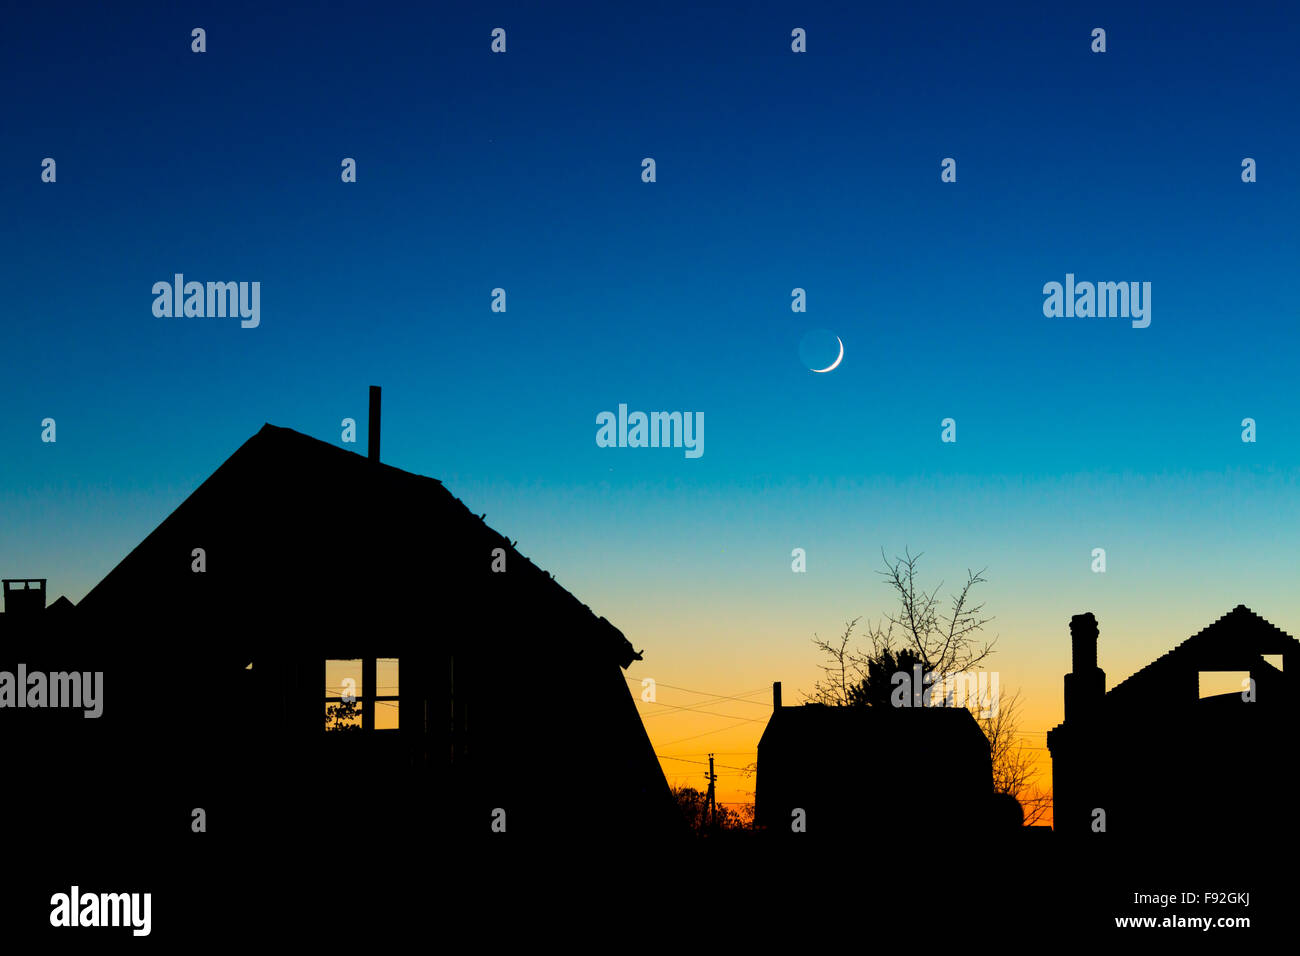 Dächer-Silhouetten gegen den Nachthimmel mit Neumond Stockfoto